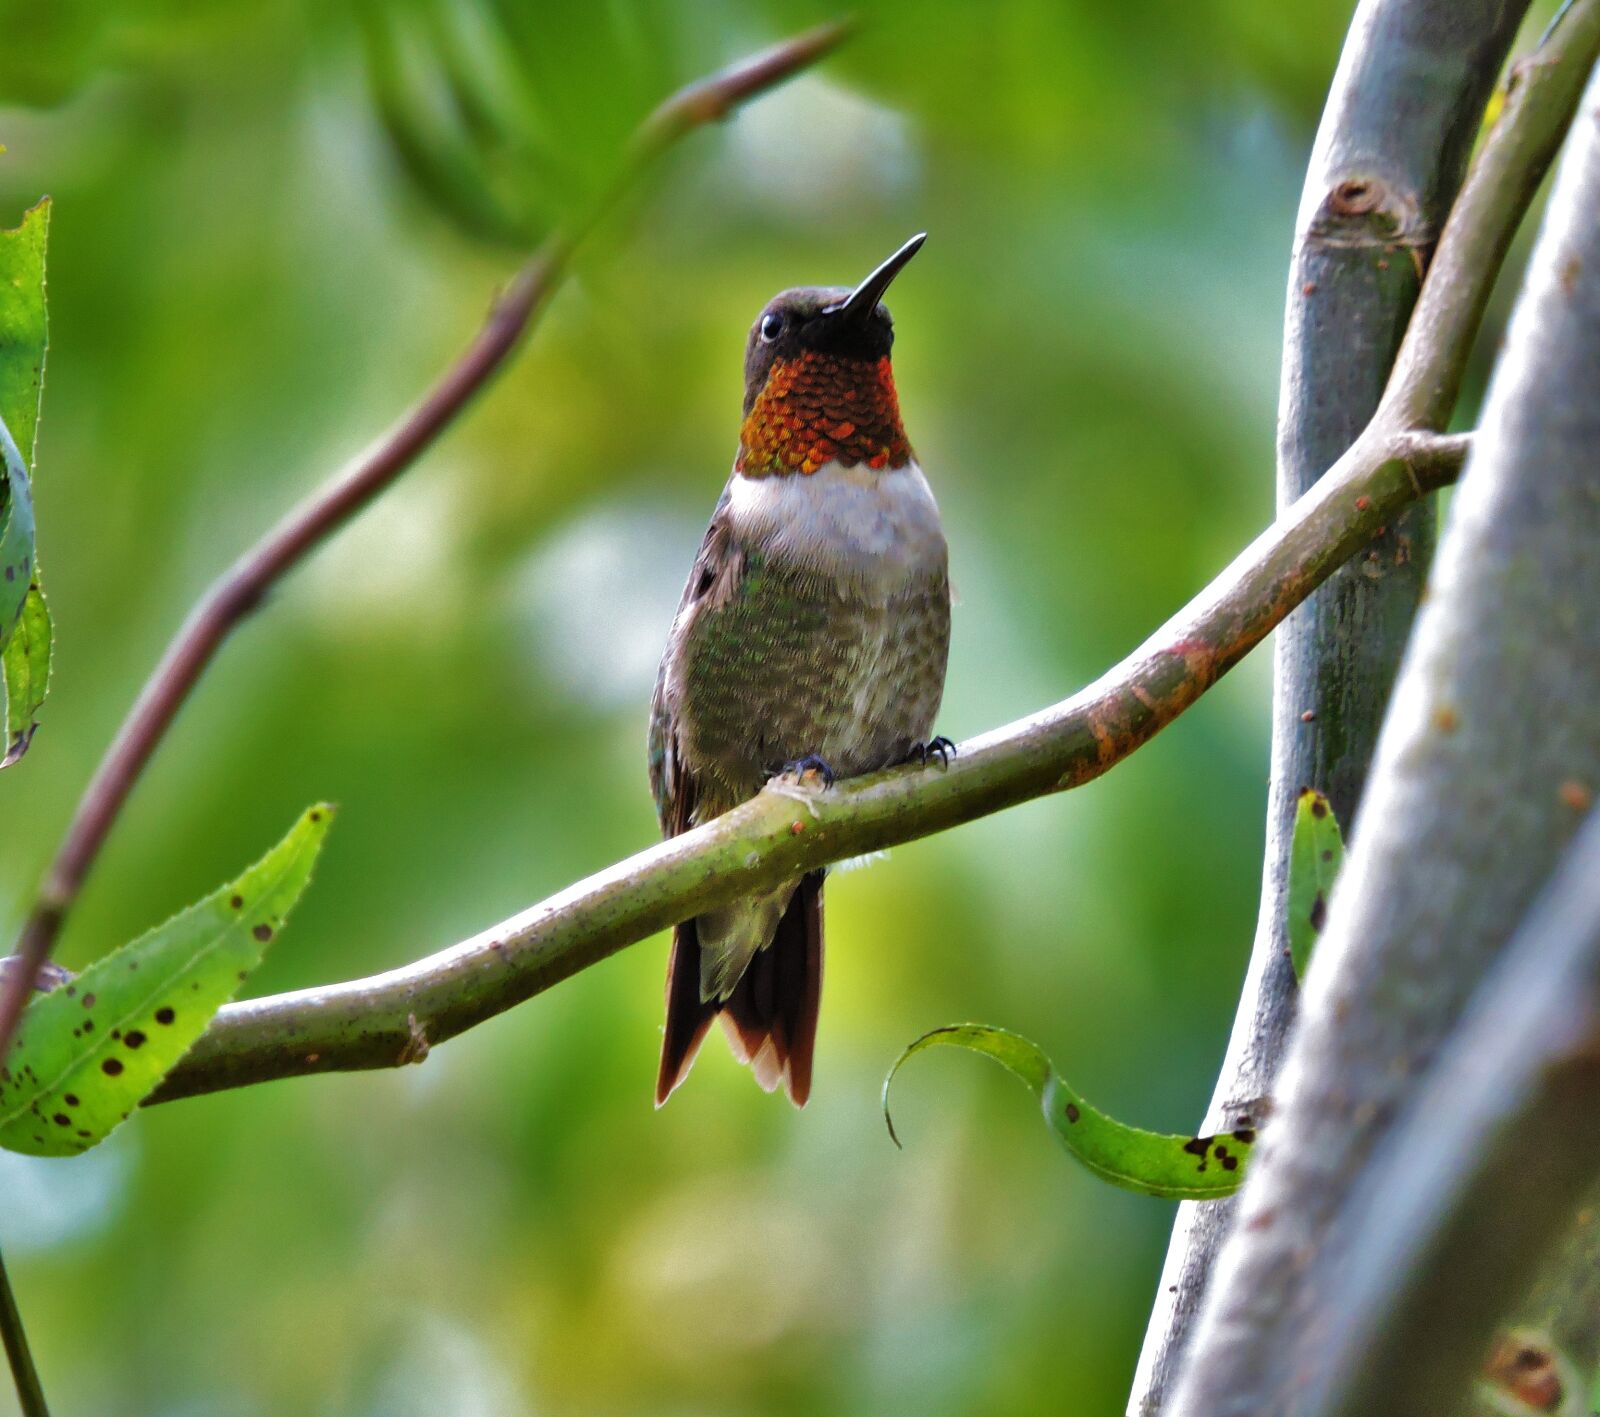 Nikon Coolpix P600 sample photo. Hummingbird, bird, nature photography